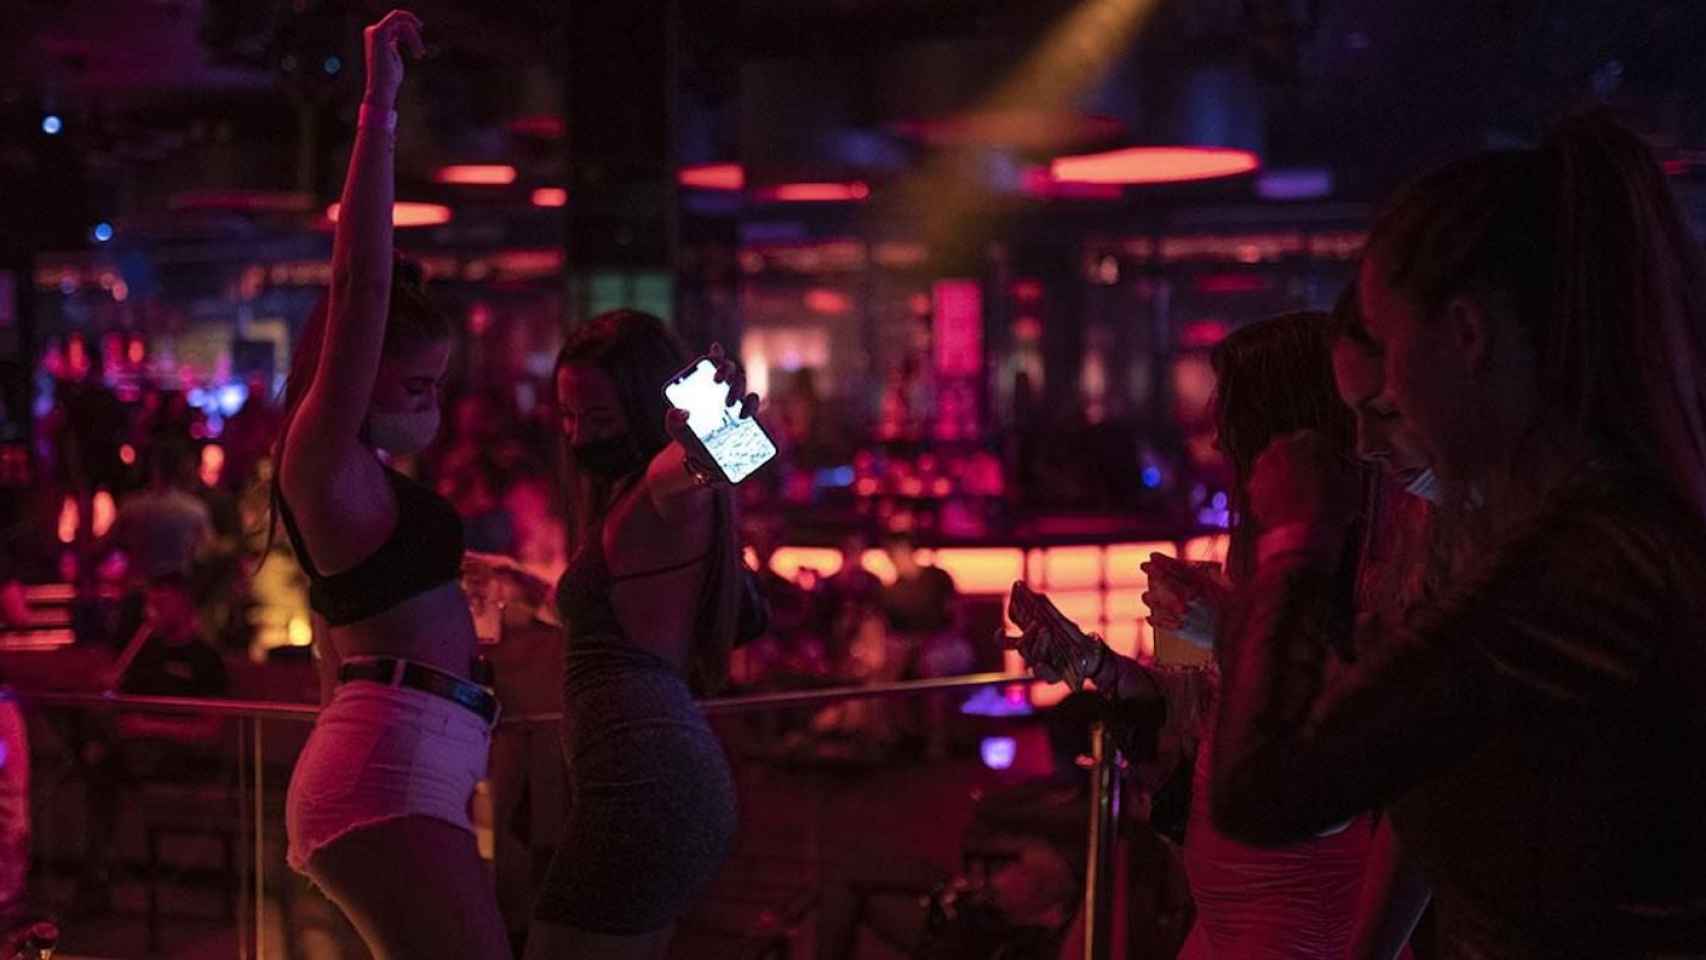 Jóvenes bailan en la discoteca con la mascarilla puesta / EUROPA PRESS